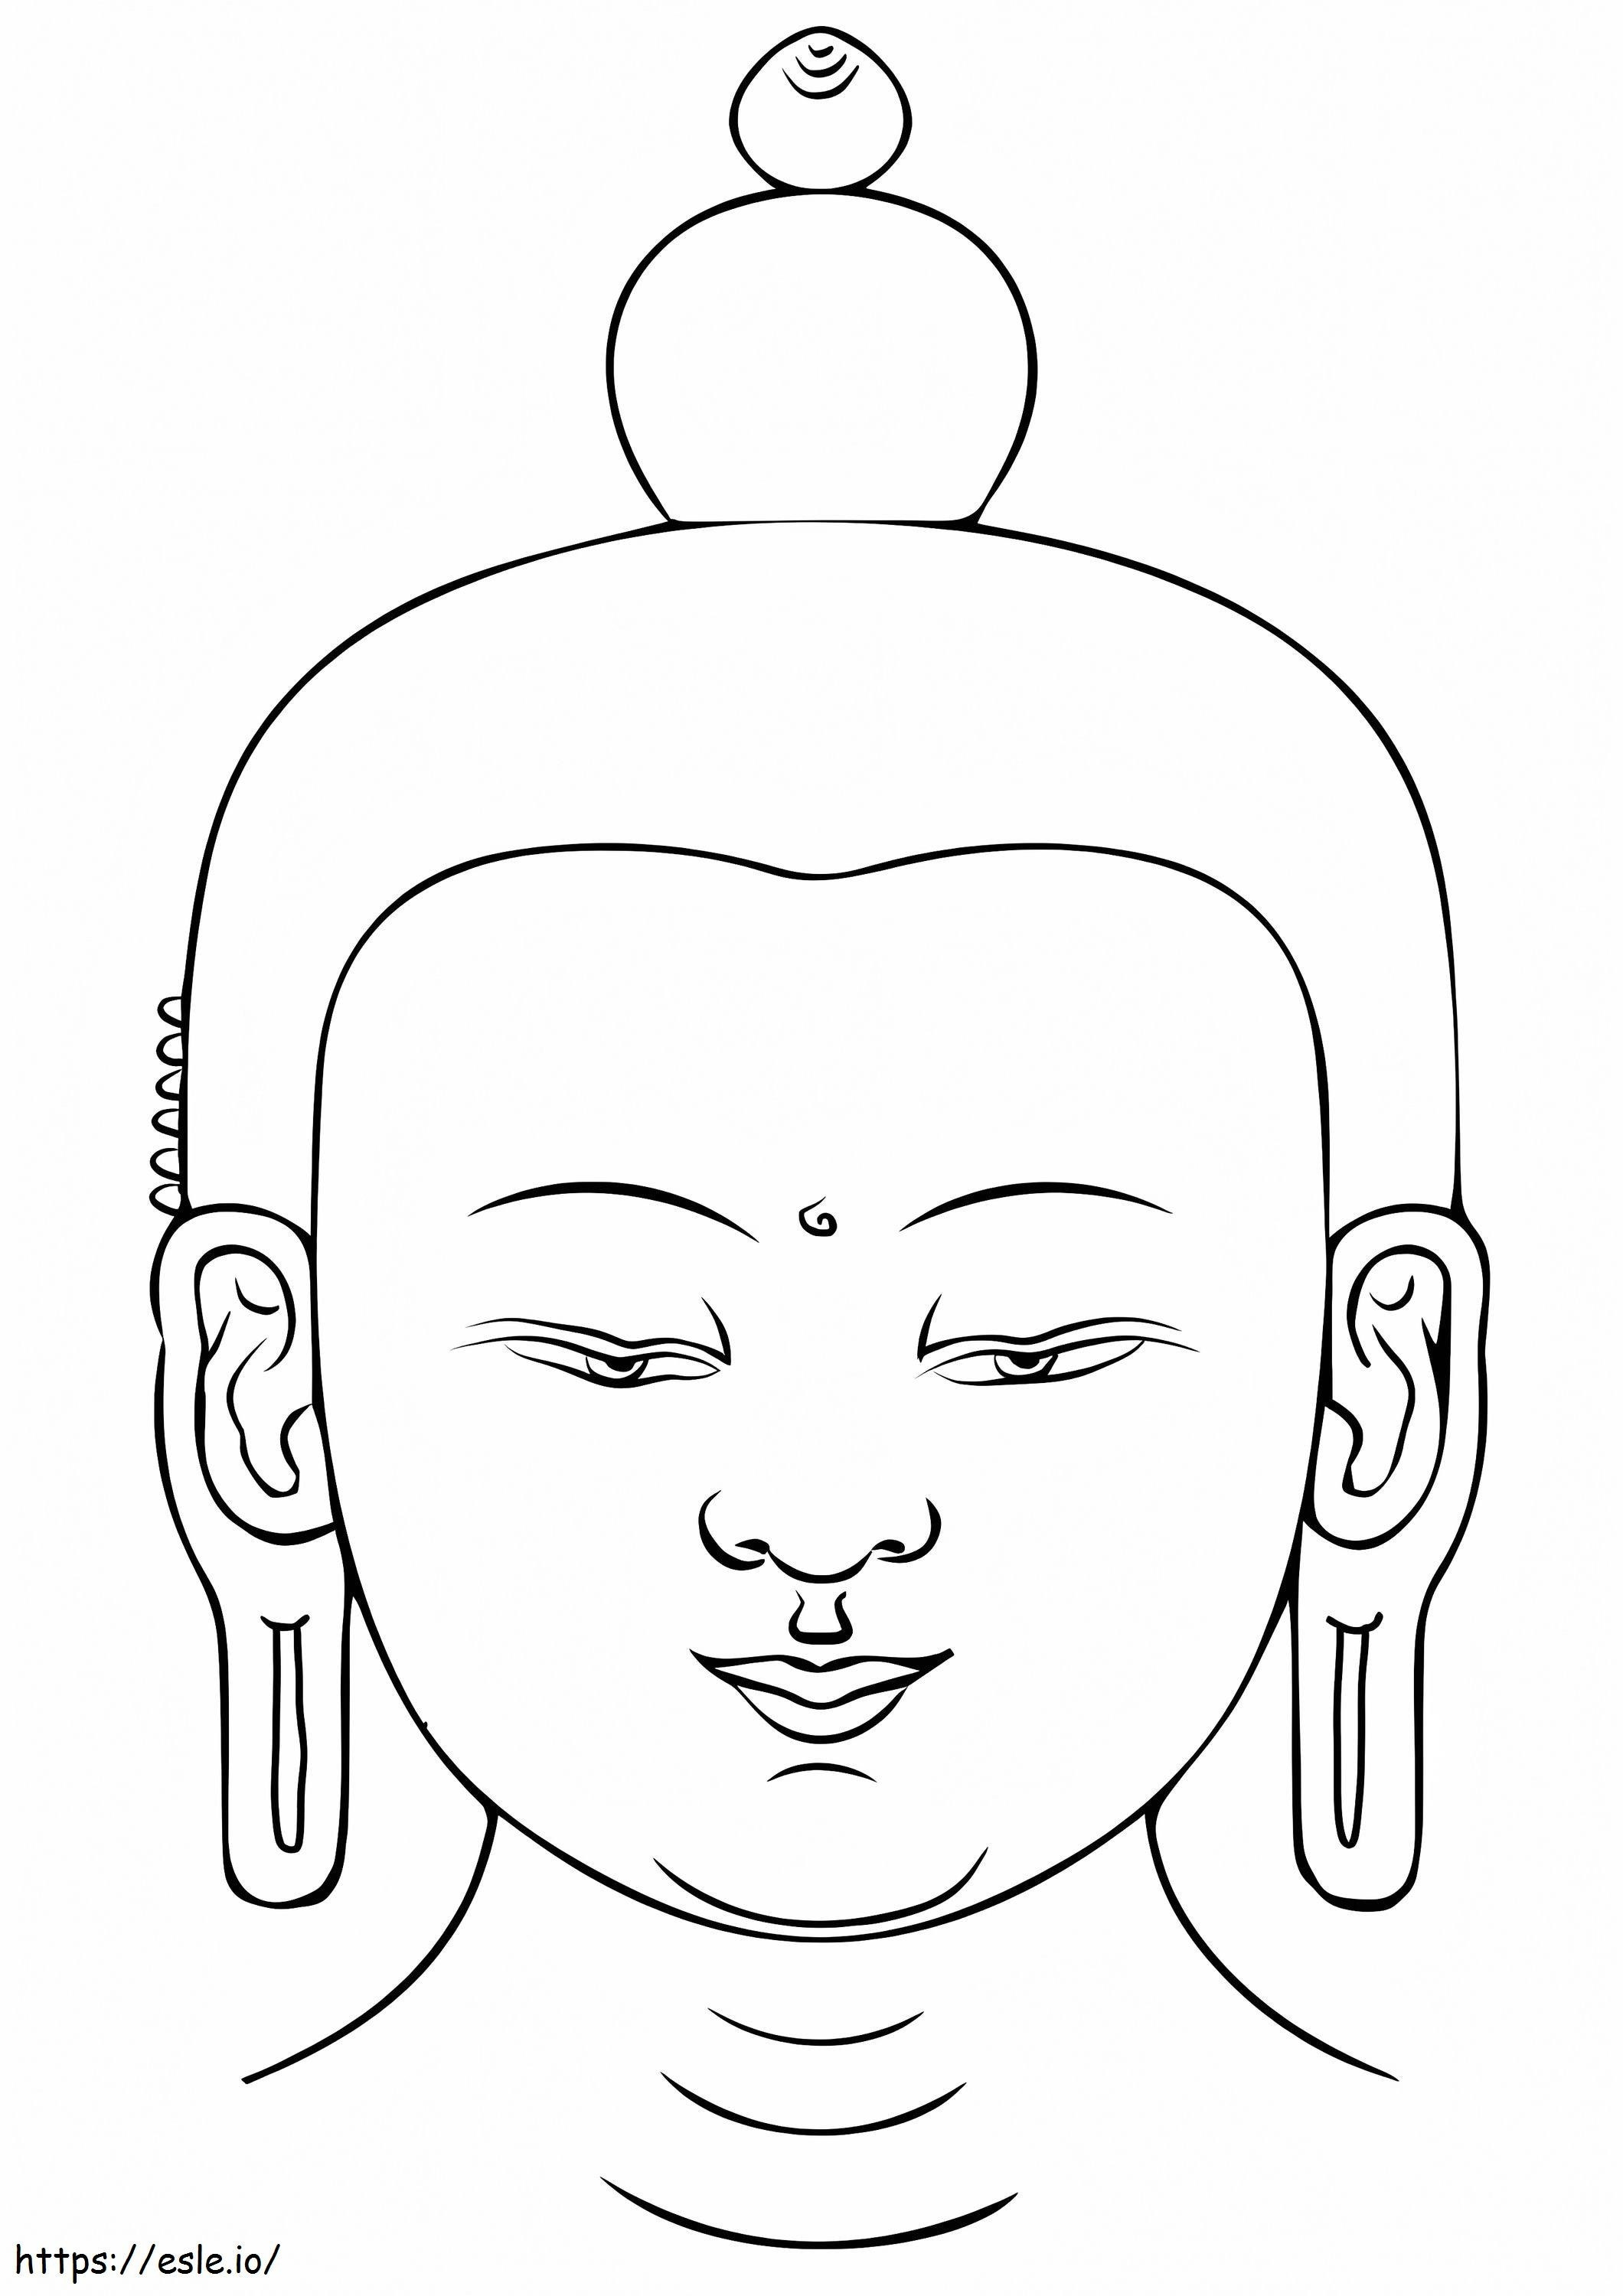 Het hoofd van de Boeddha kleurplaat kleurplaat